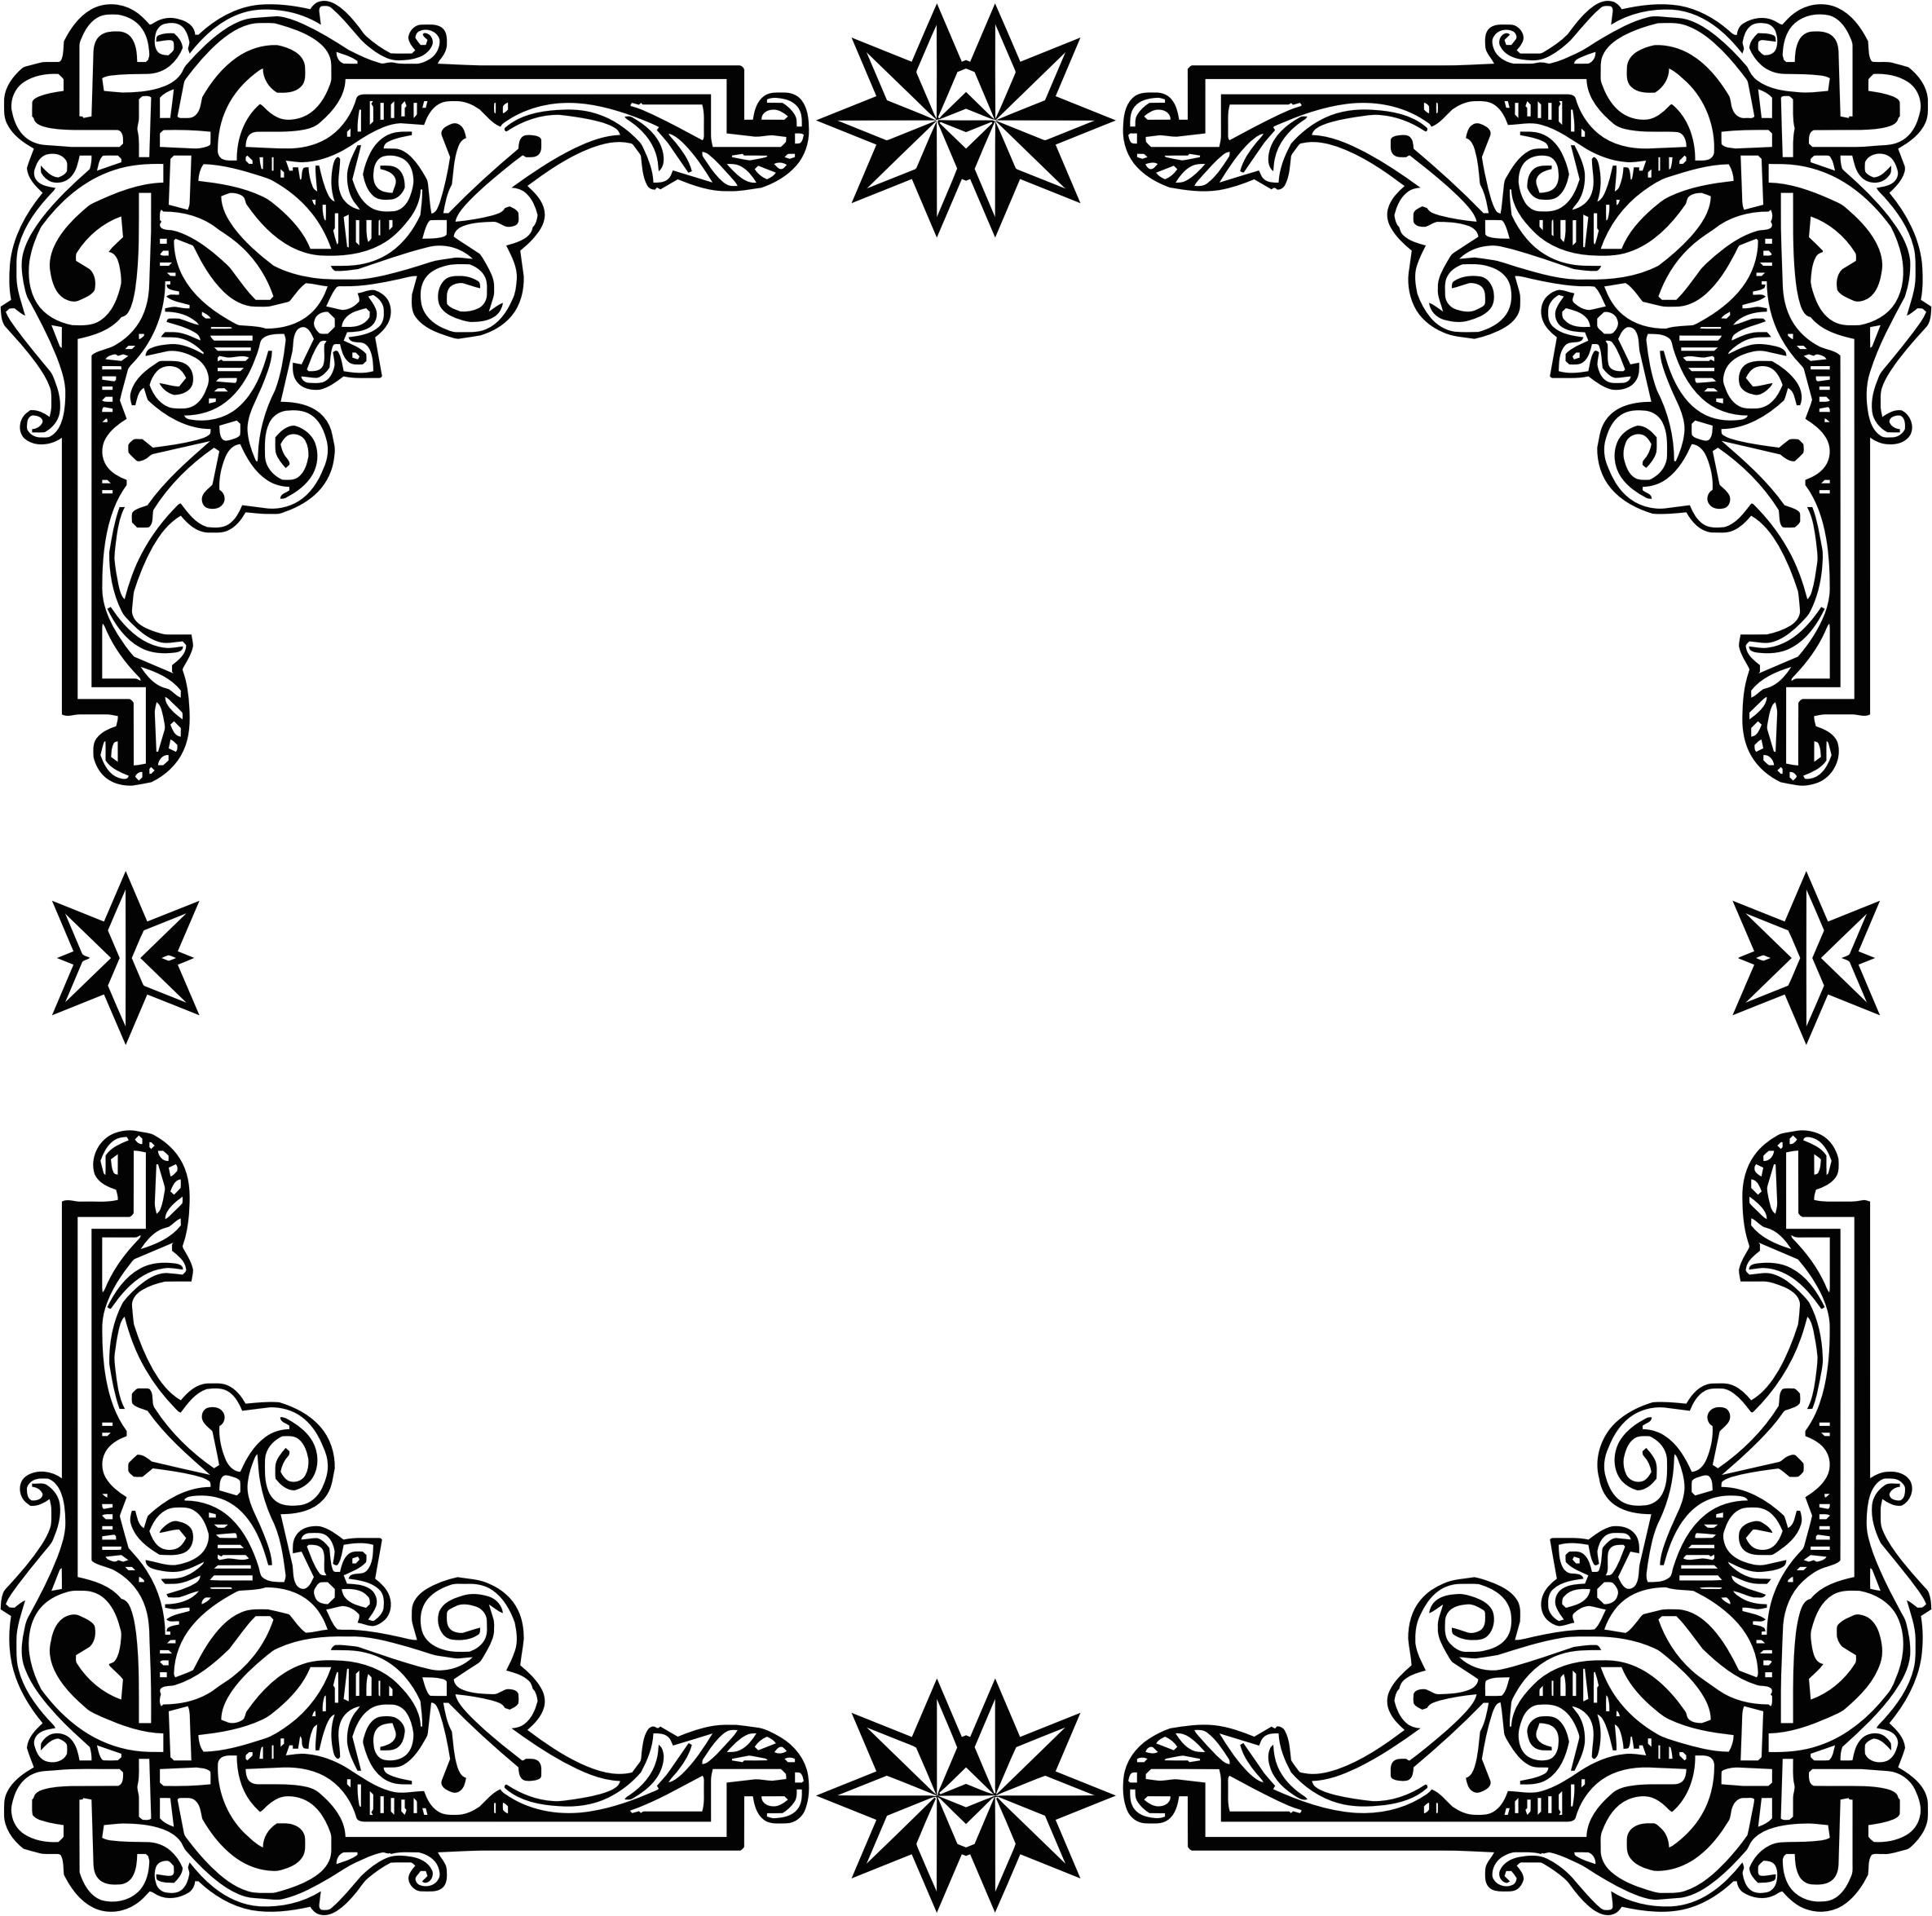 Clipart symmetric big image. Vintage black frame png